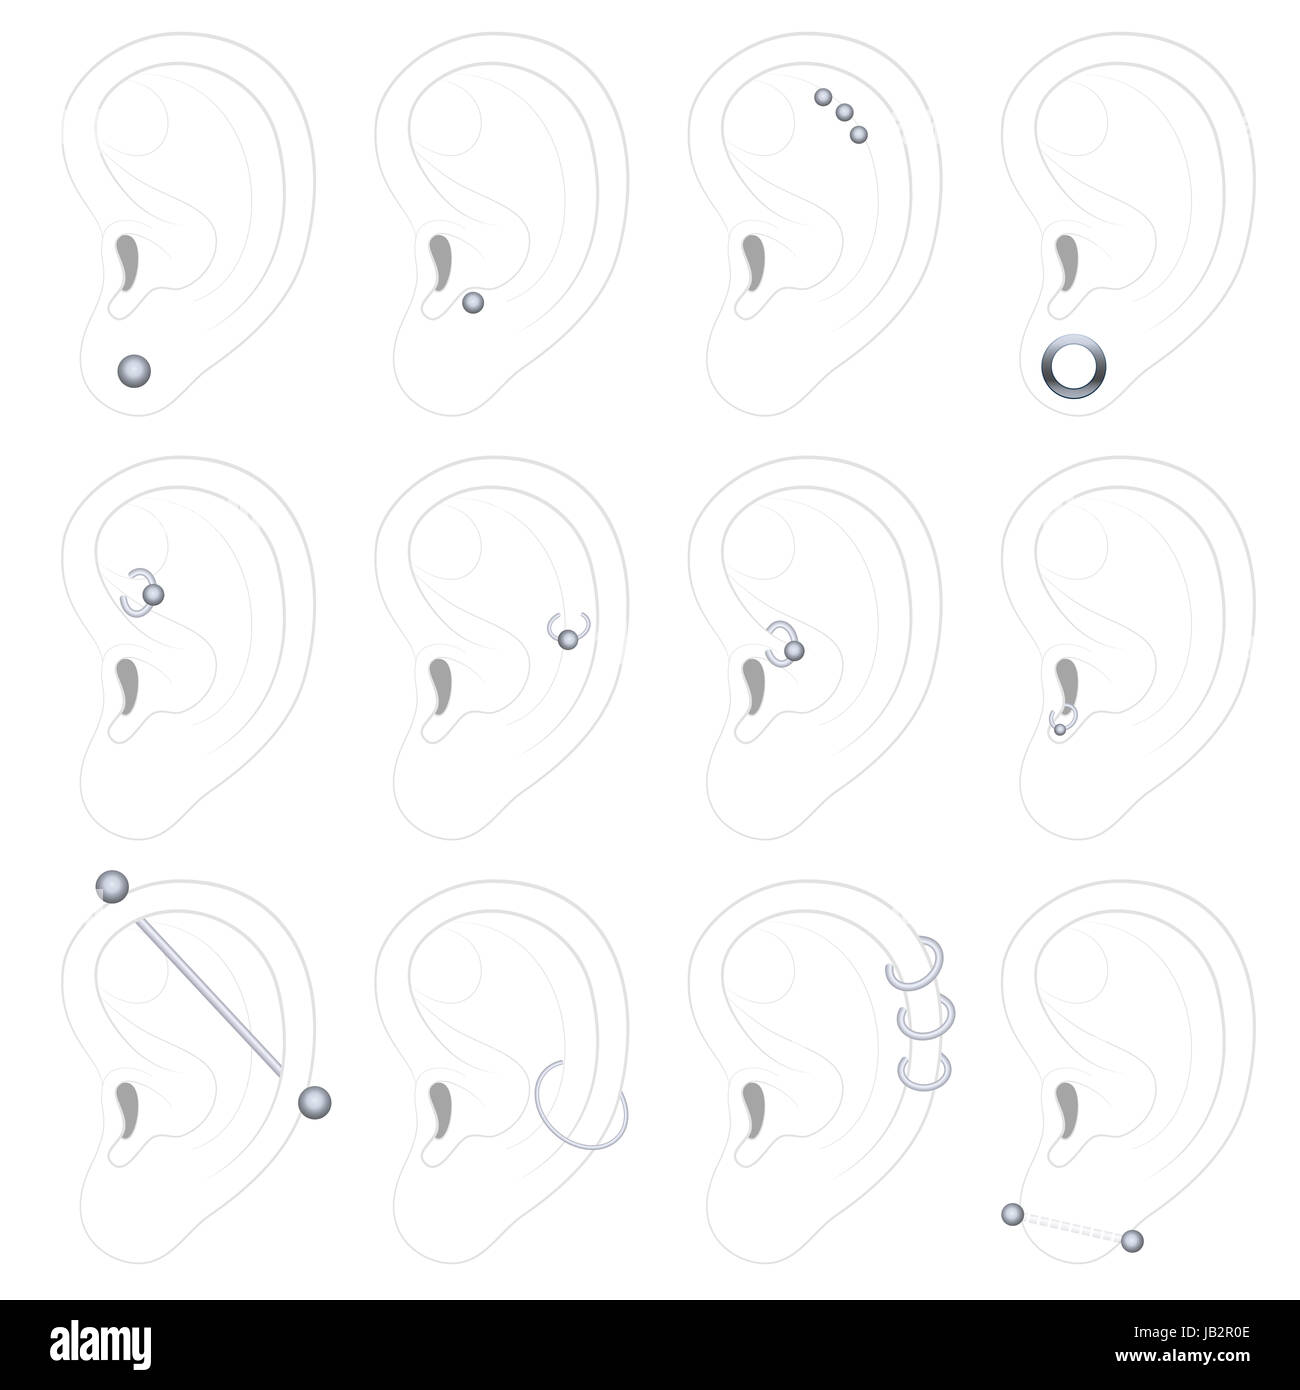 Ear piercing esempi - dodici tipi diversi - illustrazione su sfondo bianco. Foto Stock